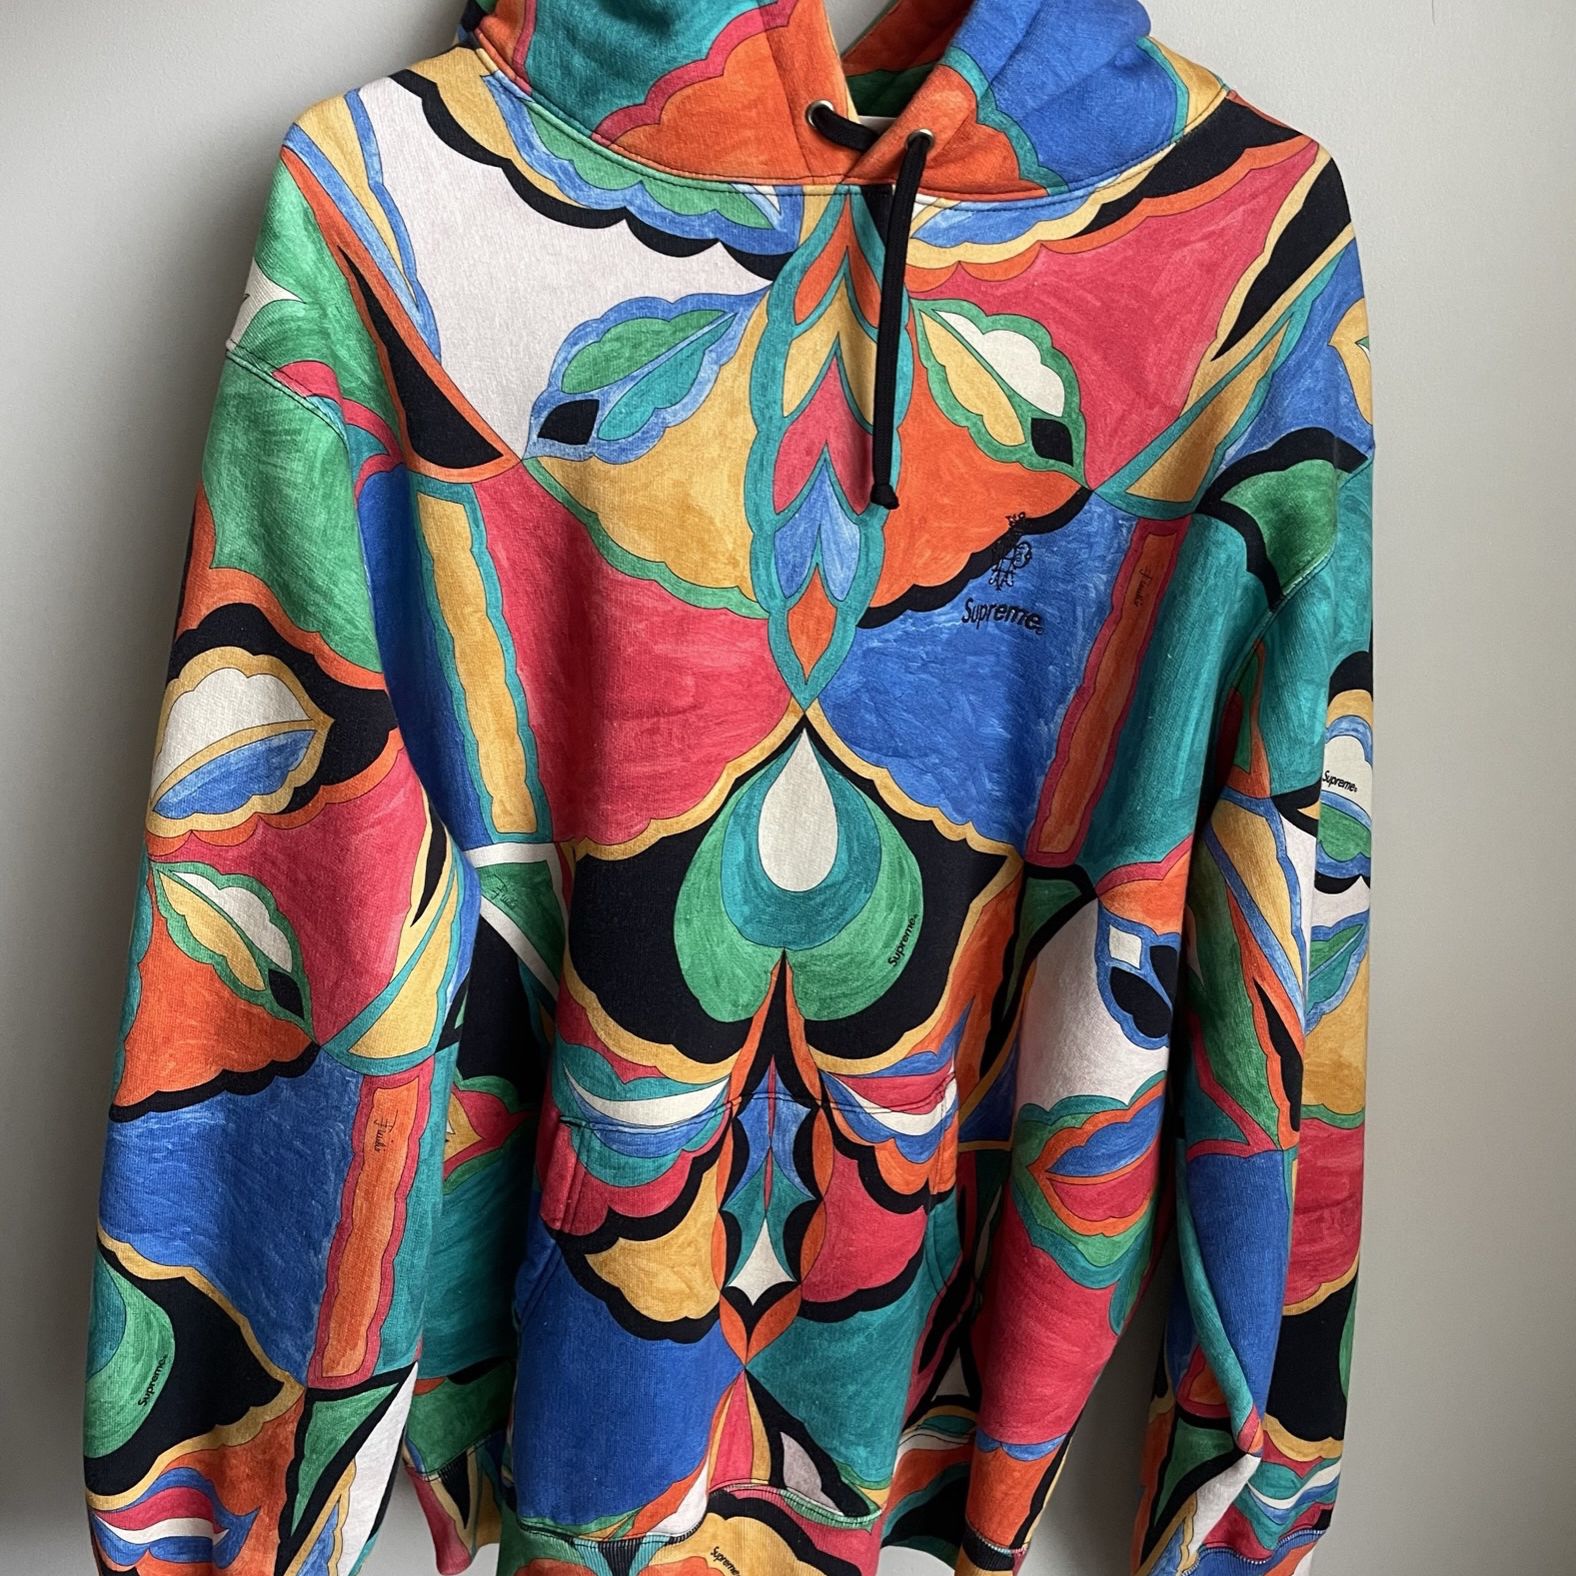 Supreme / Emilio Pucci Hooded Sweatshirt